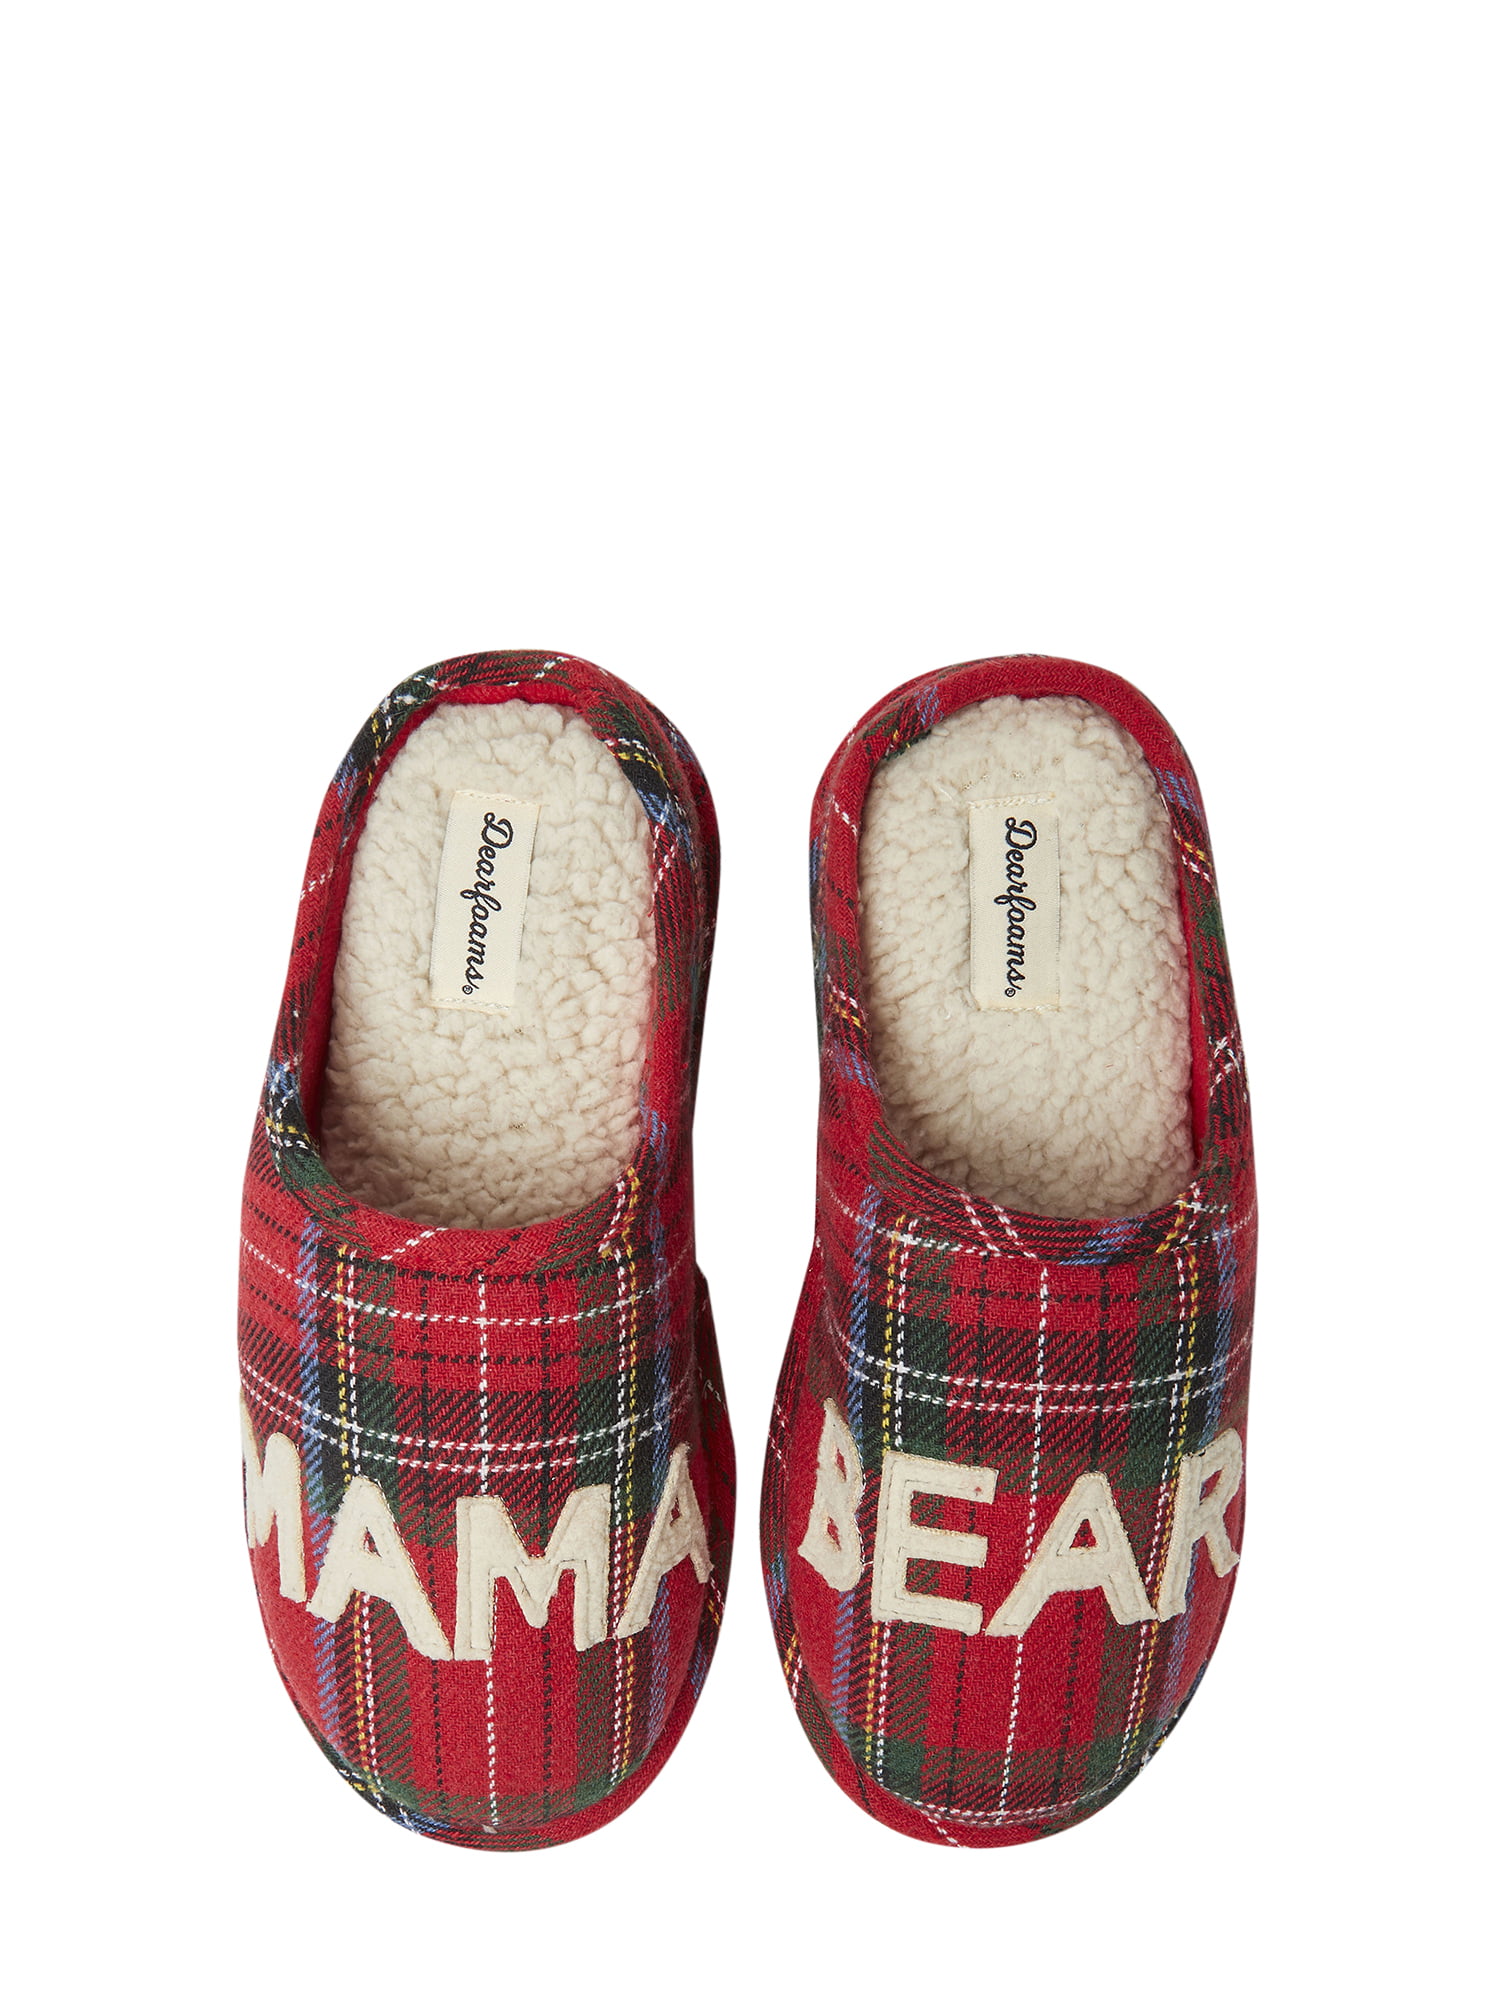 walmart bear slippers